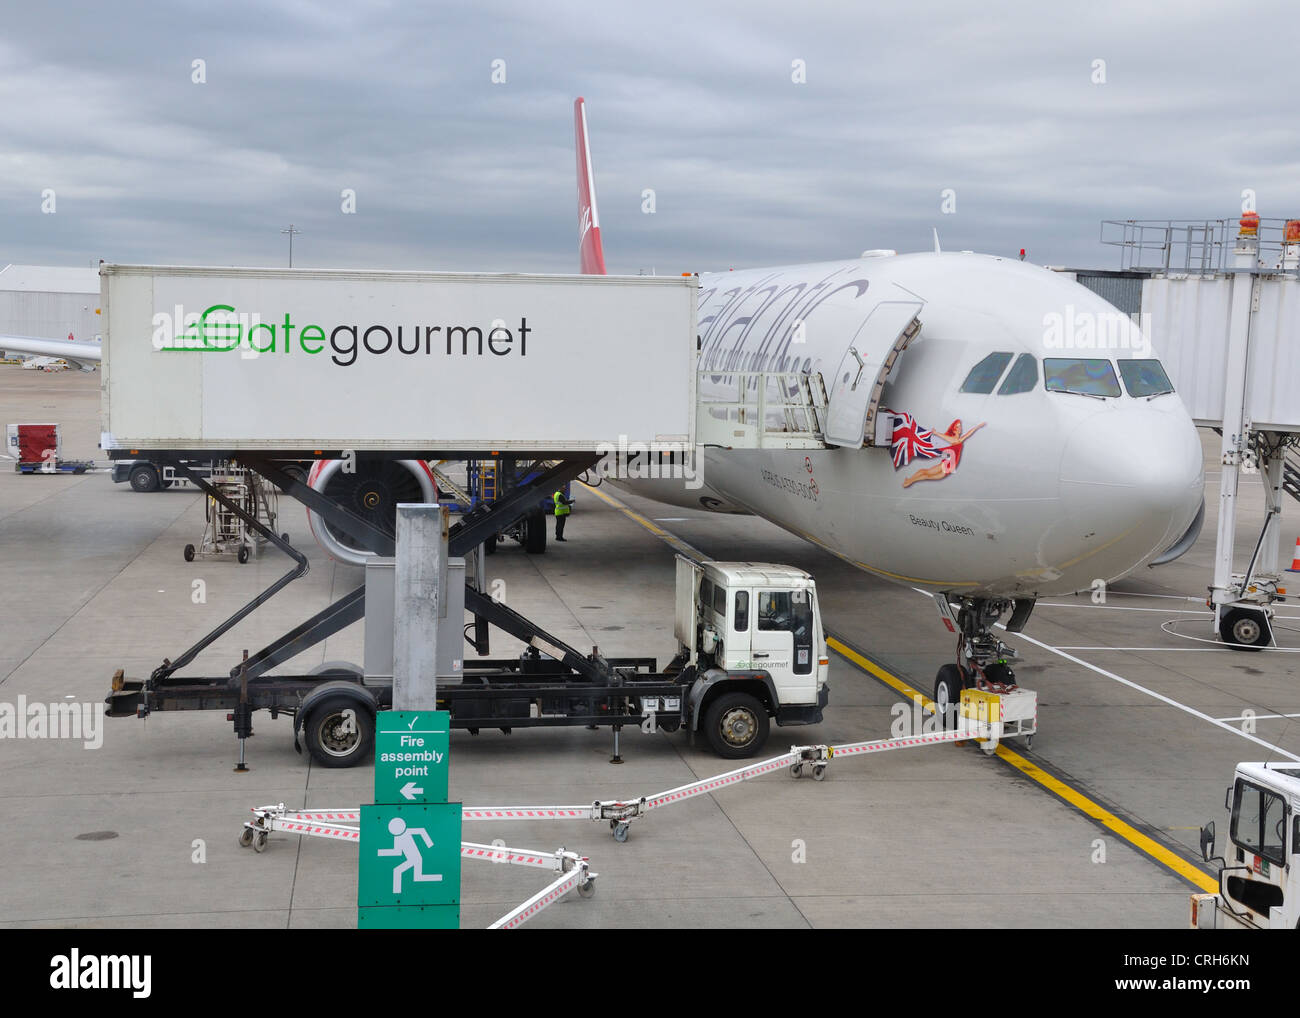 Eine Jungfrau Atlantik Flugzeug erhält Service von Gate Gourmet am Flughafen Glasgow. Stockfoto